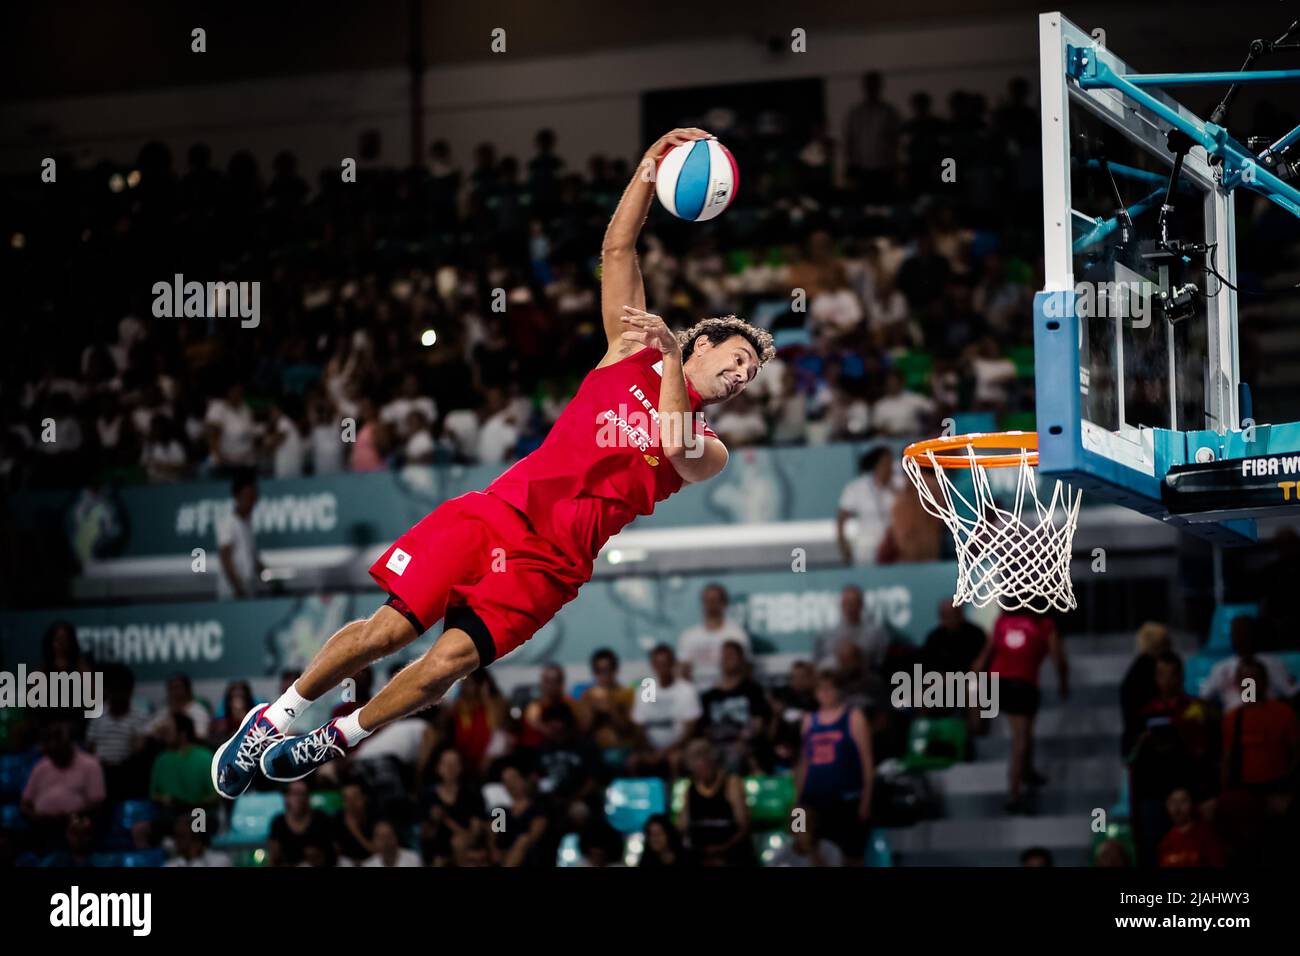 Ténérife, Espagne, 26 septembre 2018: Un joueur de basket-ball saute haut lors d'un spectacle acrobatique de basket-ball à la FIBA Basketball WWC 2018 Banque D'Images